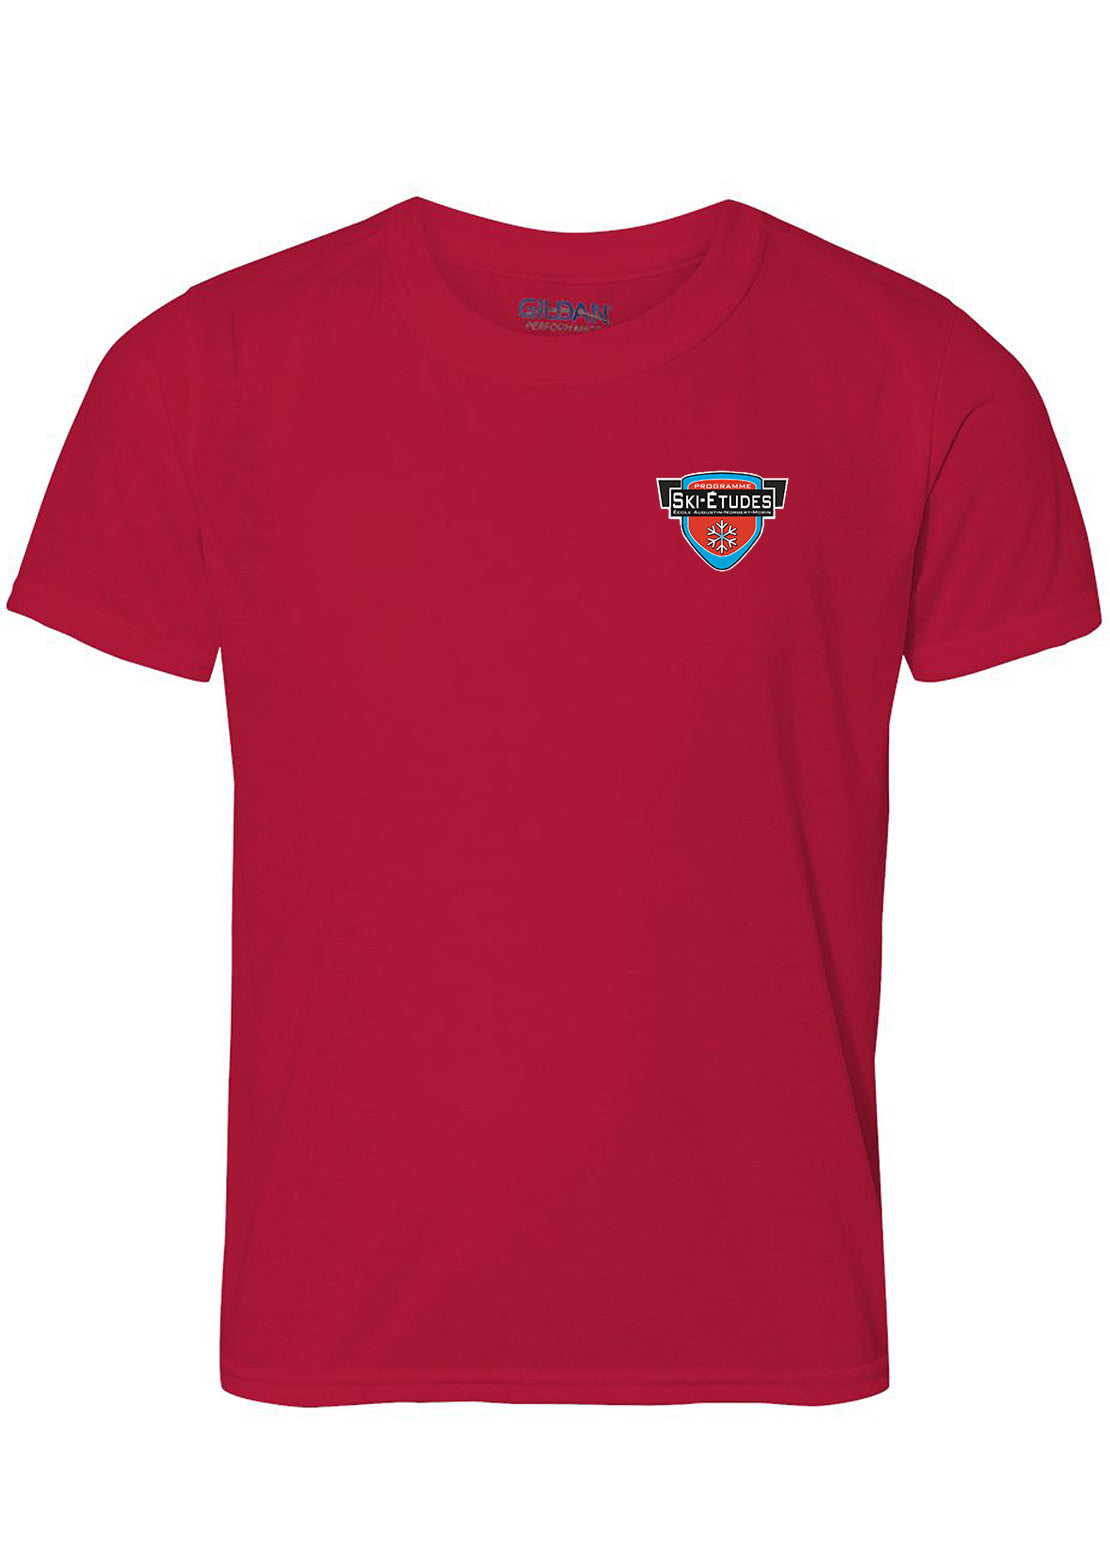 AN-Morin X Ski T-Shirt Junior Red